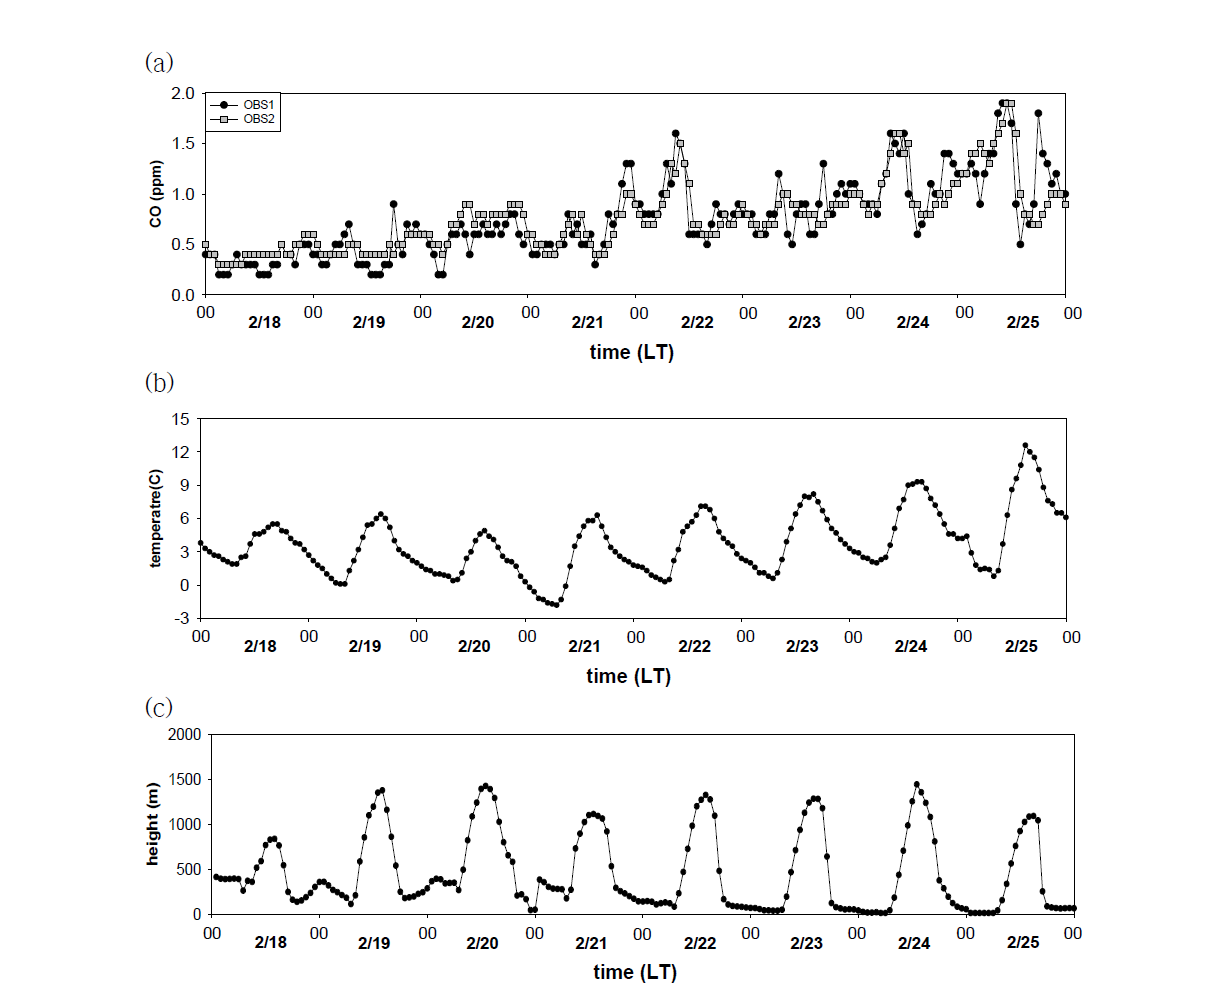 서울시 영등포구 지역의 (a) 측정 CO 농도(검은색 점 - 도시대기측정소, 회색 점 - 도로변측정소), (b) 관측 기온, (c) 수치 모의된 대기경계층(planetary boundary layer, PBL) 고도의 시계열